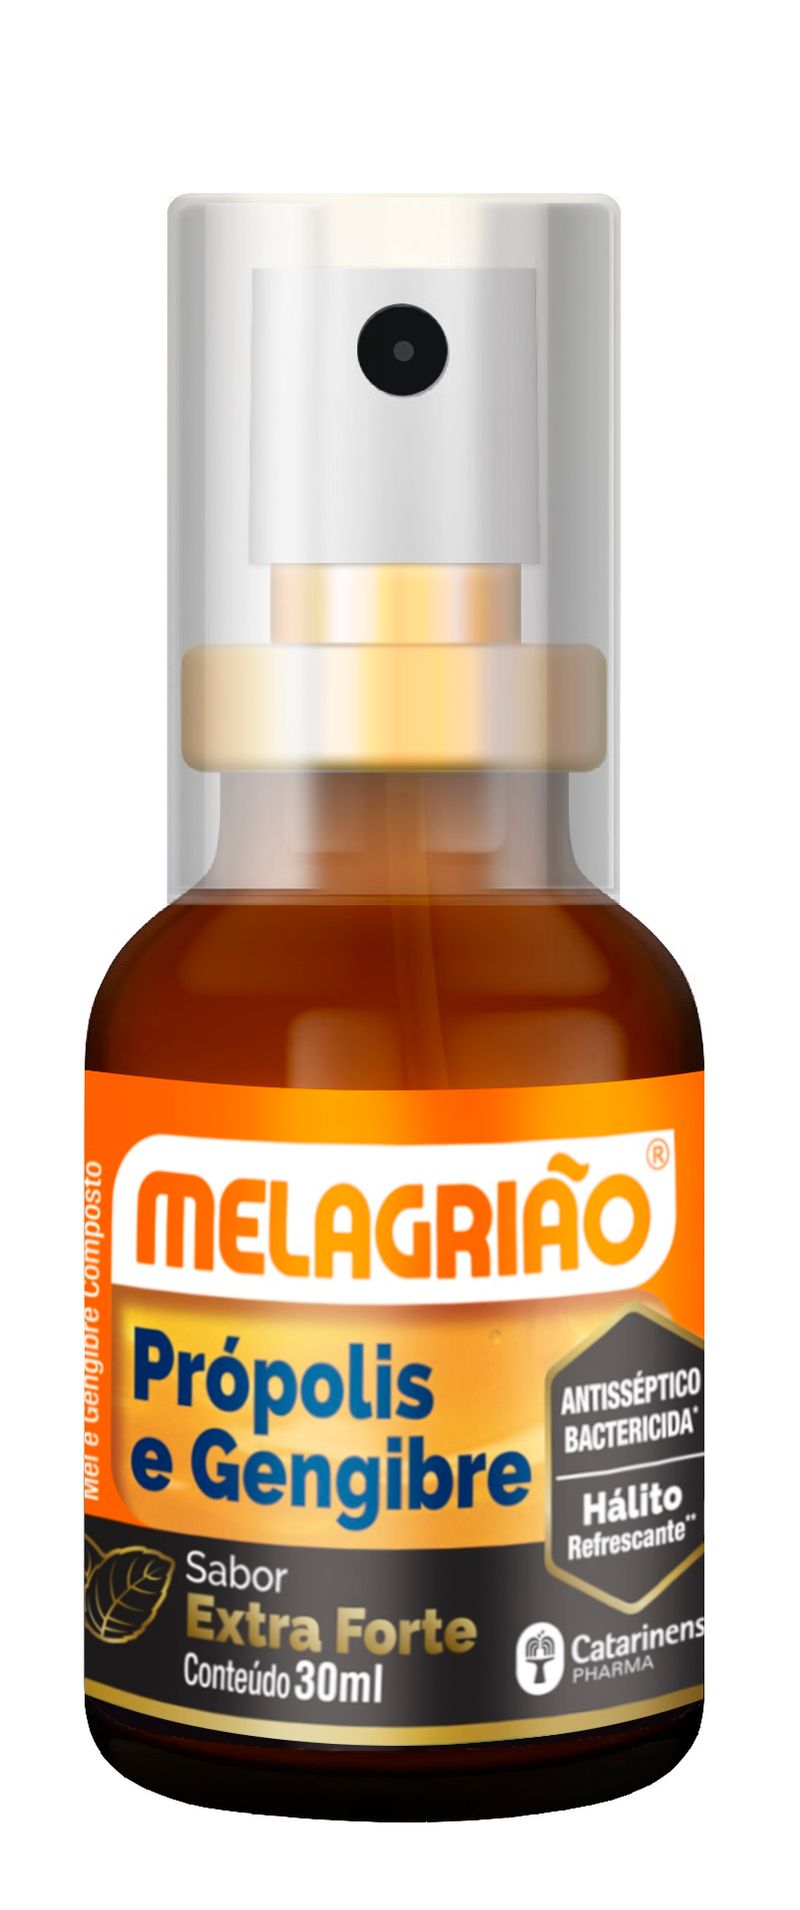 melagriao-extra-forte-spray-30ml-secundaria